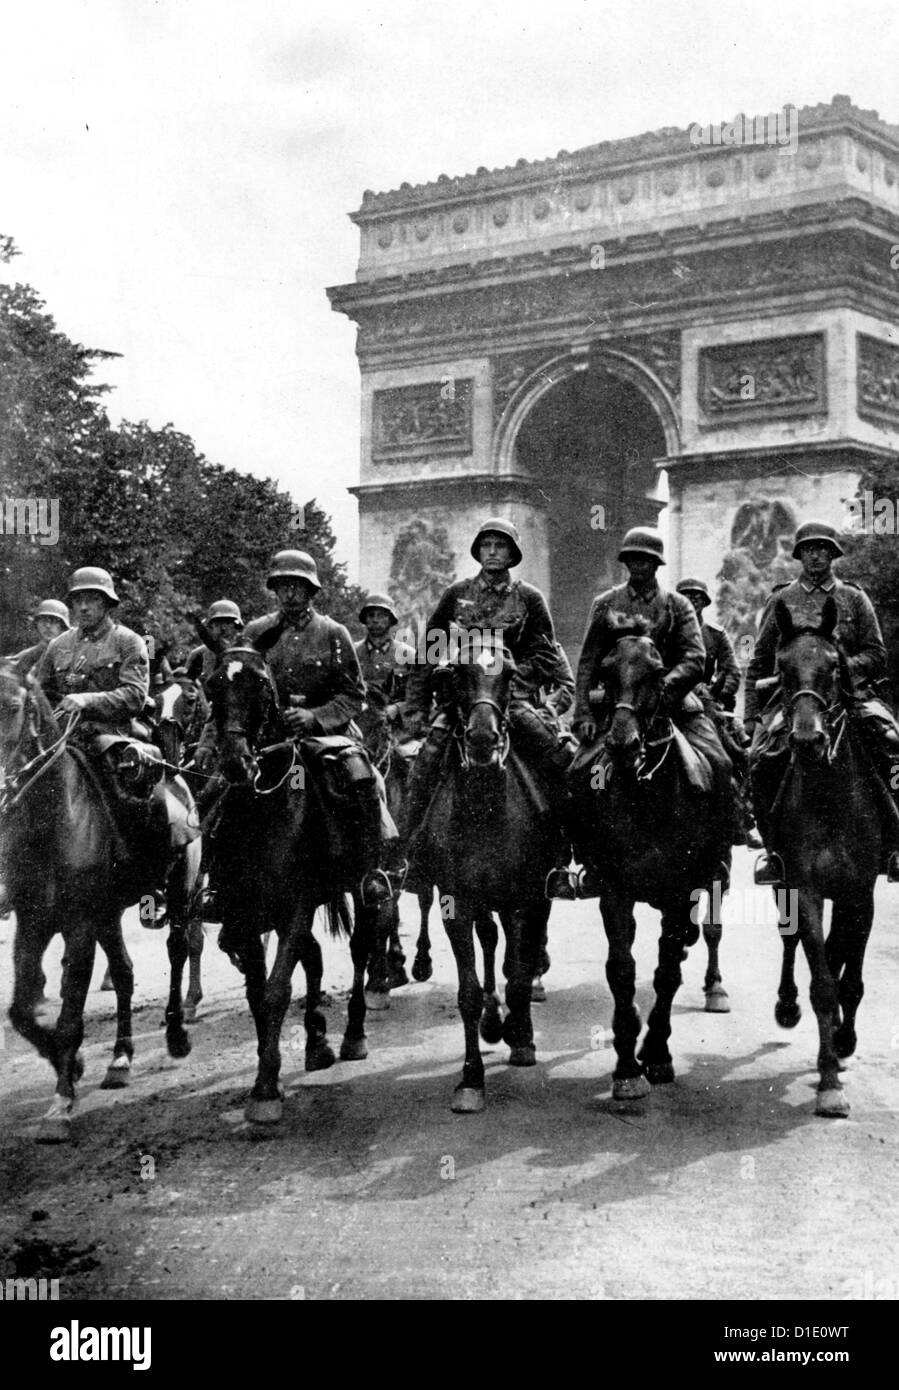 Soldati della Wehrmacht tedesca della Bassa Sassonia sono raffigurate nella parte anteriore del Arc de Triomphe durante l'invasione tedesca di Parigi, Francia, 14 giugno 1940. Foto: Berliner Verlag Foto Stock